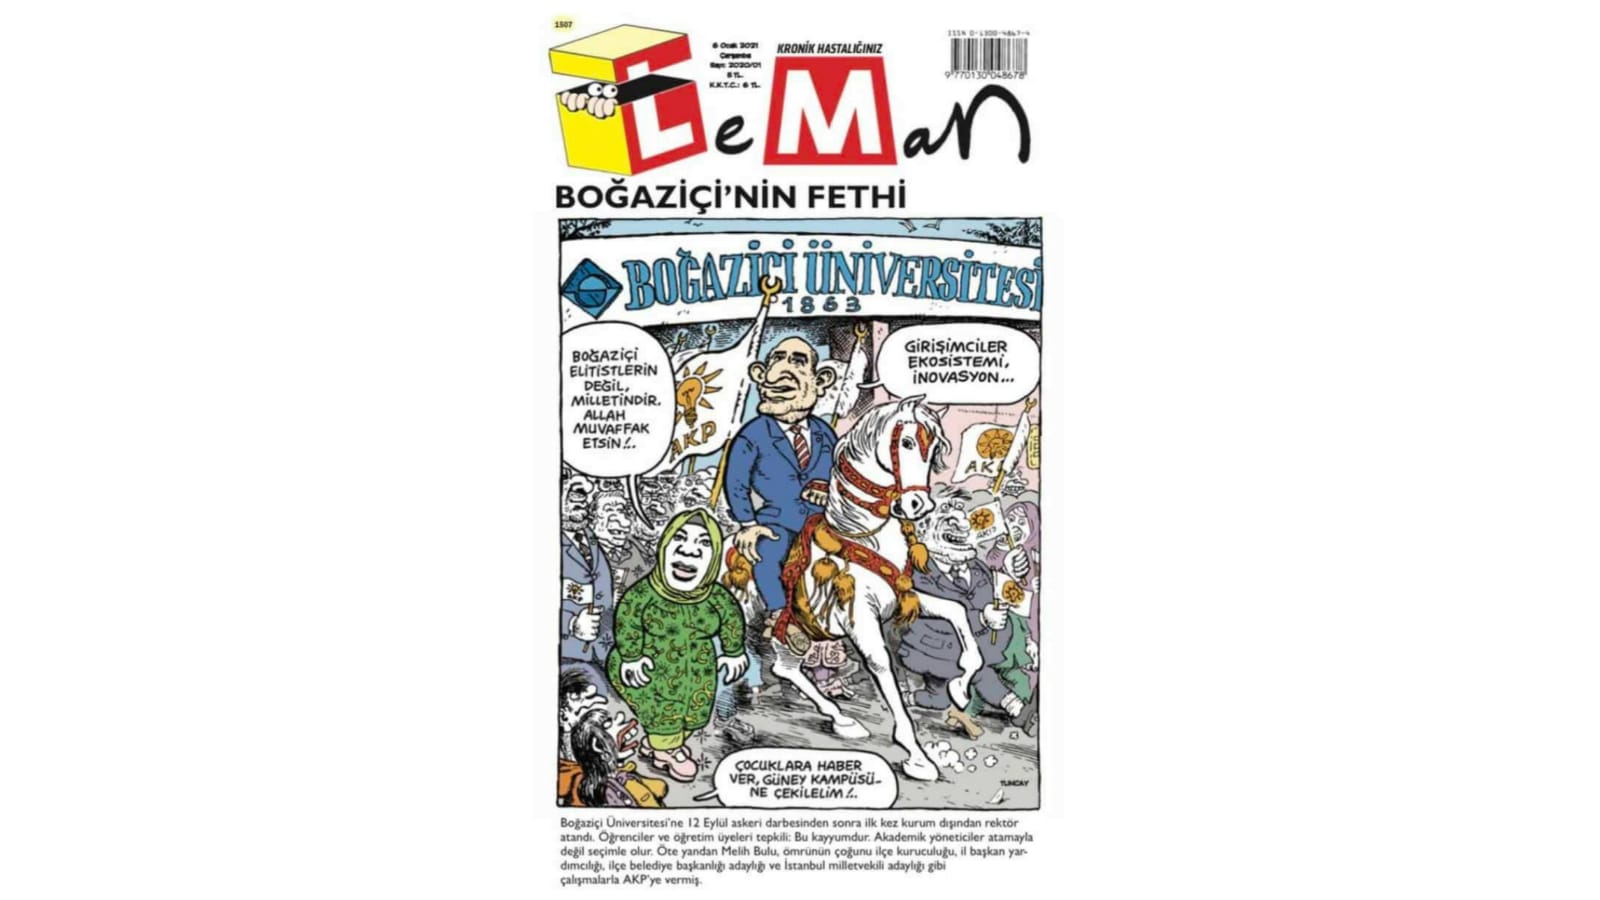 Leman Dergisi, Boğaziçi'ne yeni rektör ataması ''Fatih'in İstanbul'u işgali gibi'' dedi